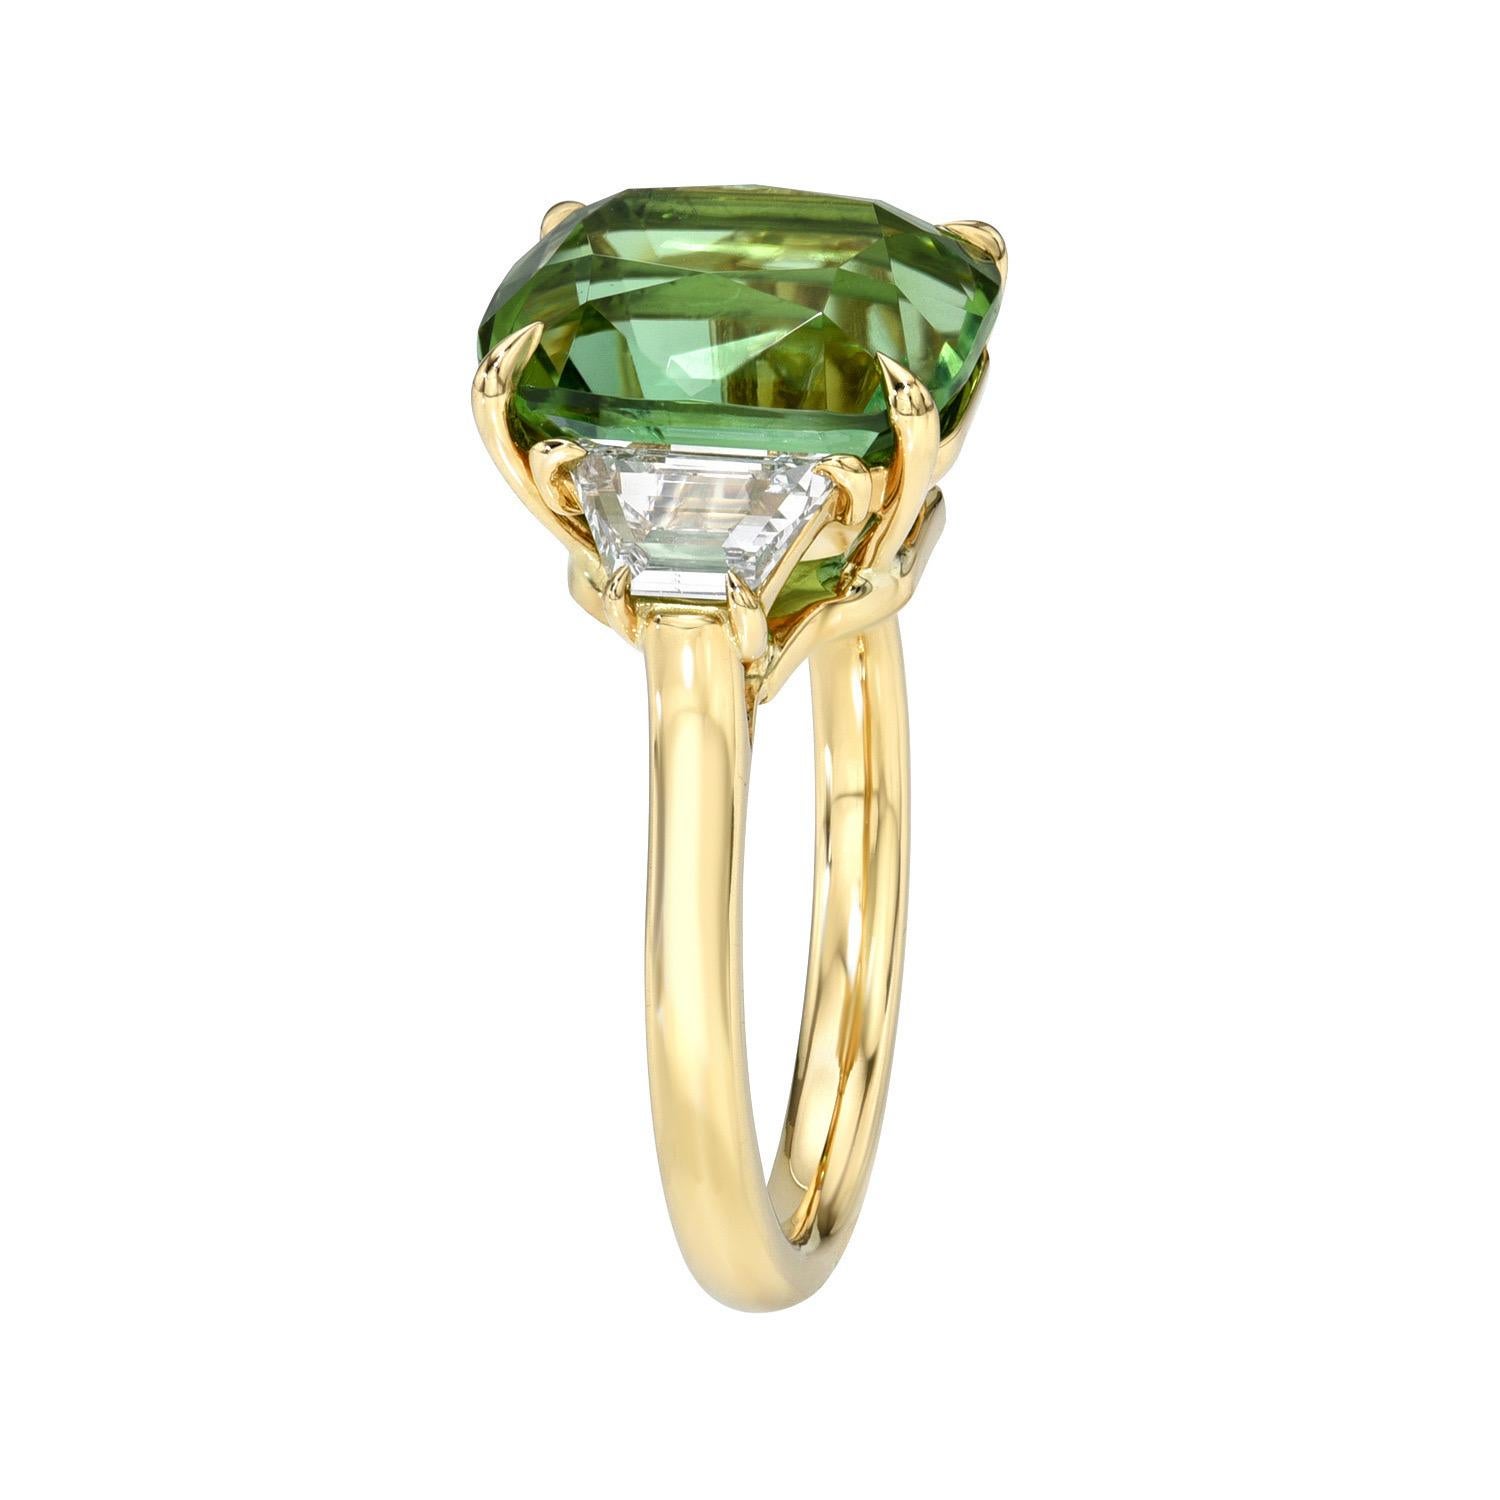 Merveilleuse bague ovale en or jaune 18K à trois pierres en tourmaline vert pomme de 6,04 carats, ornée d'une paire de diamants trapézoïdaux de 0,75 carats, couleur E/VS2-SI1, pureté.
Taille 6. Le redimensionnement est gratuit sur demande.
Les